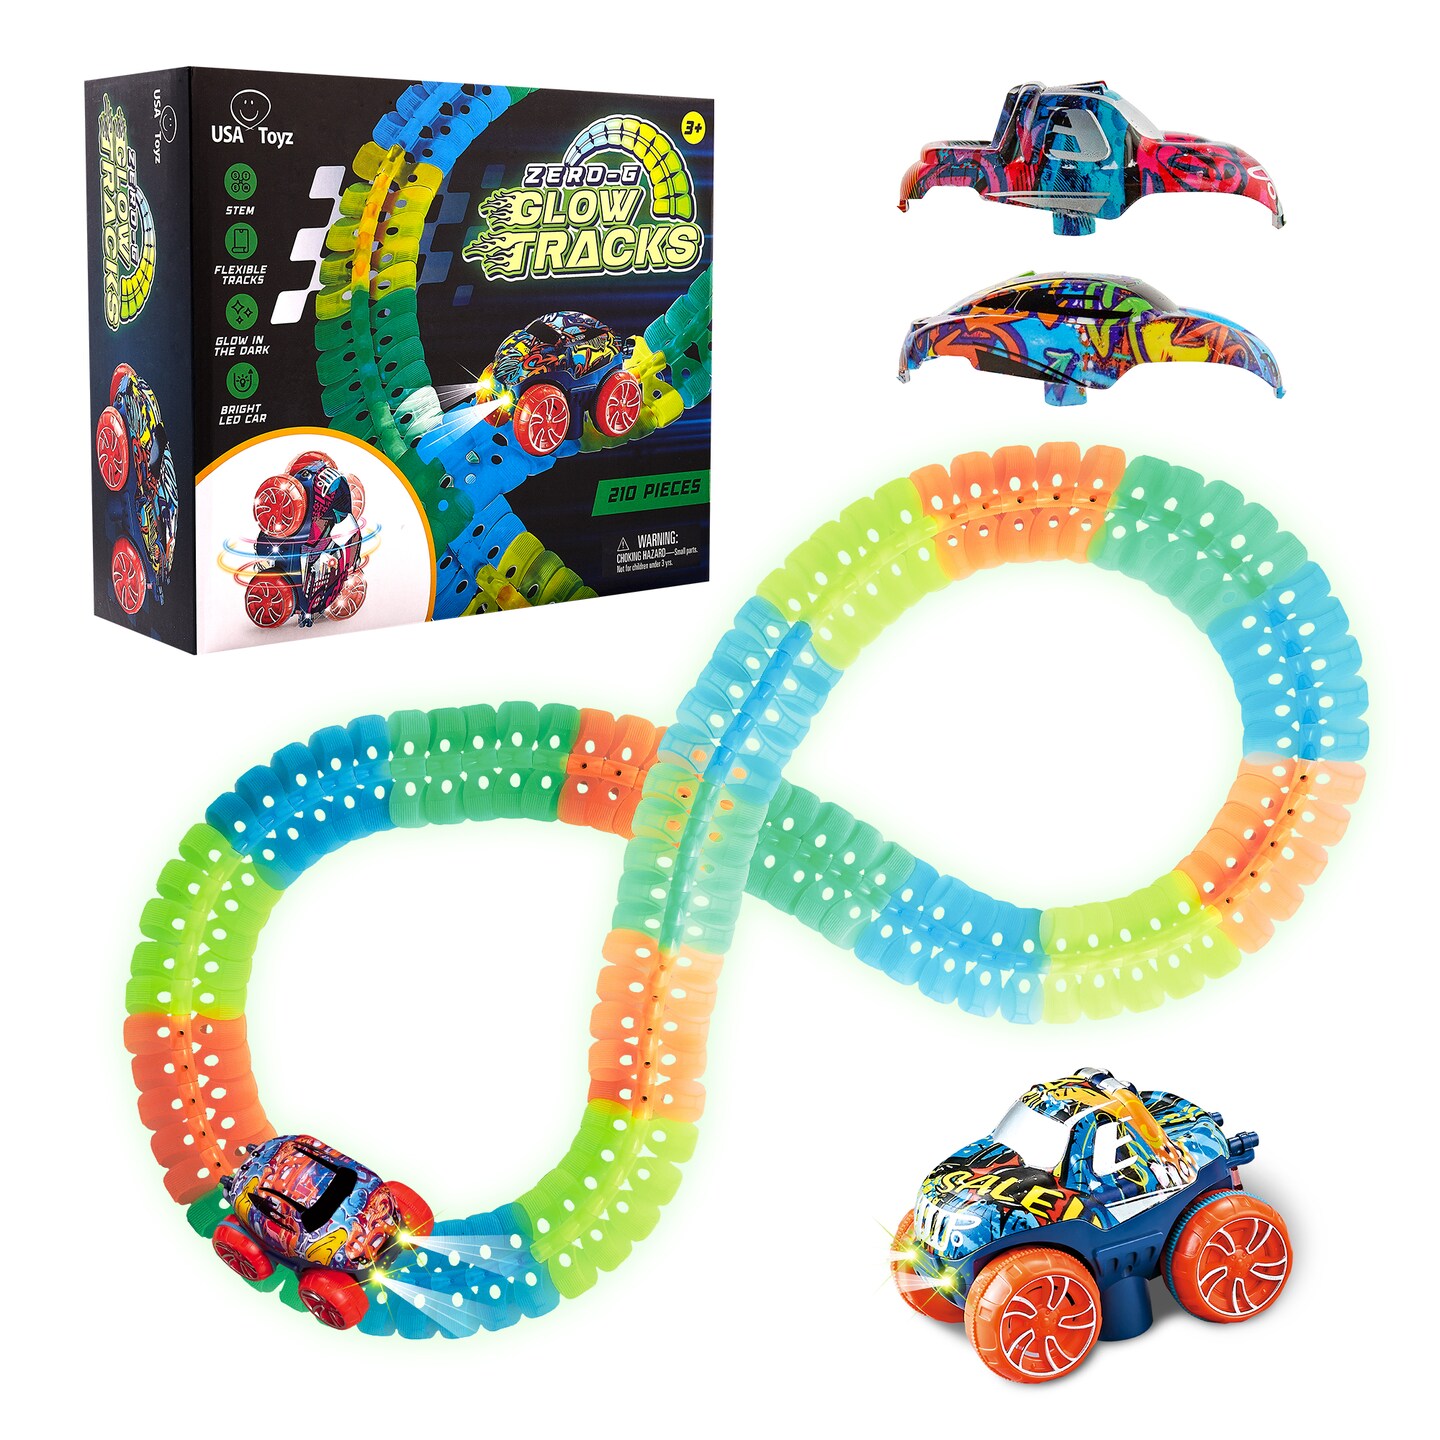 USA Toyz Zero-G Glow Race Track for Kids- 210pcs